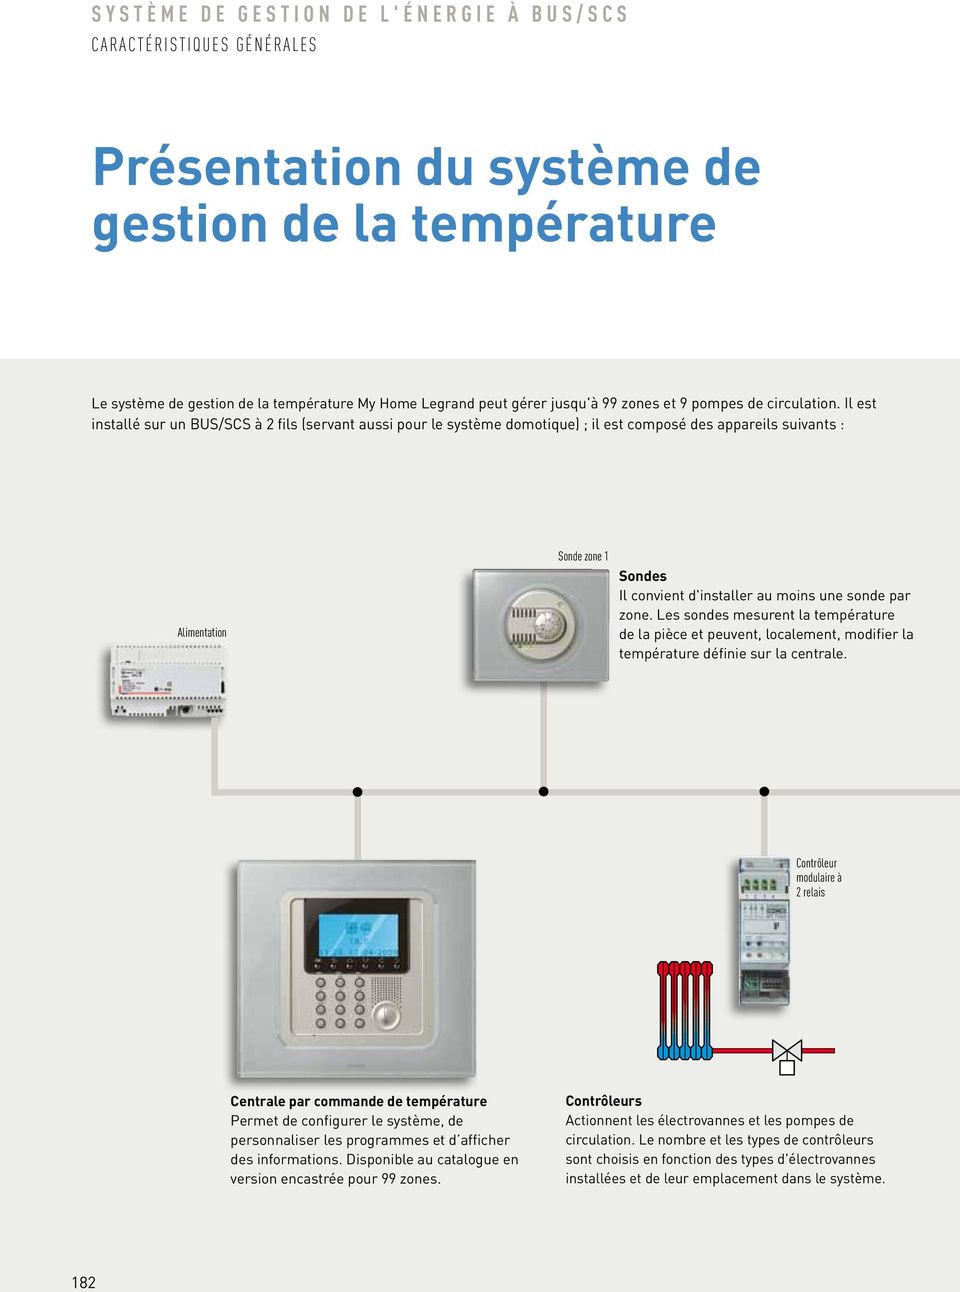 par zone. Les sondes mesurent la température de la pièce et peuvent, localement, modifier la température définie sur la centrale.